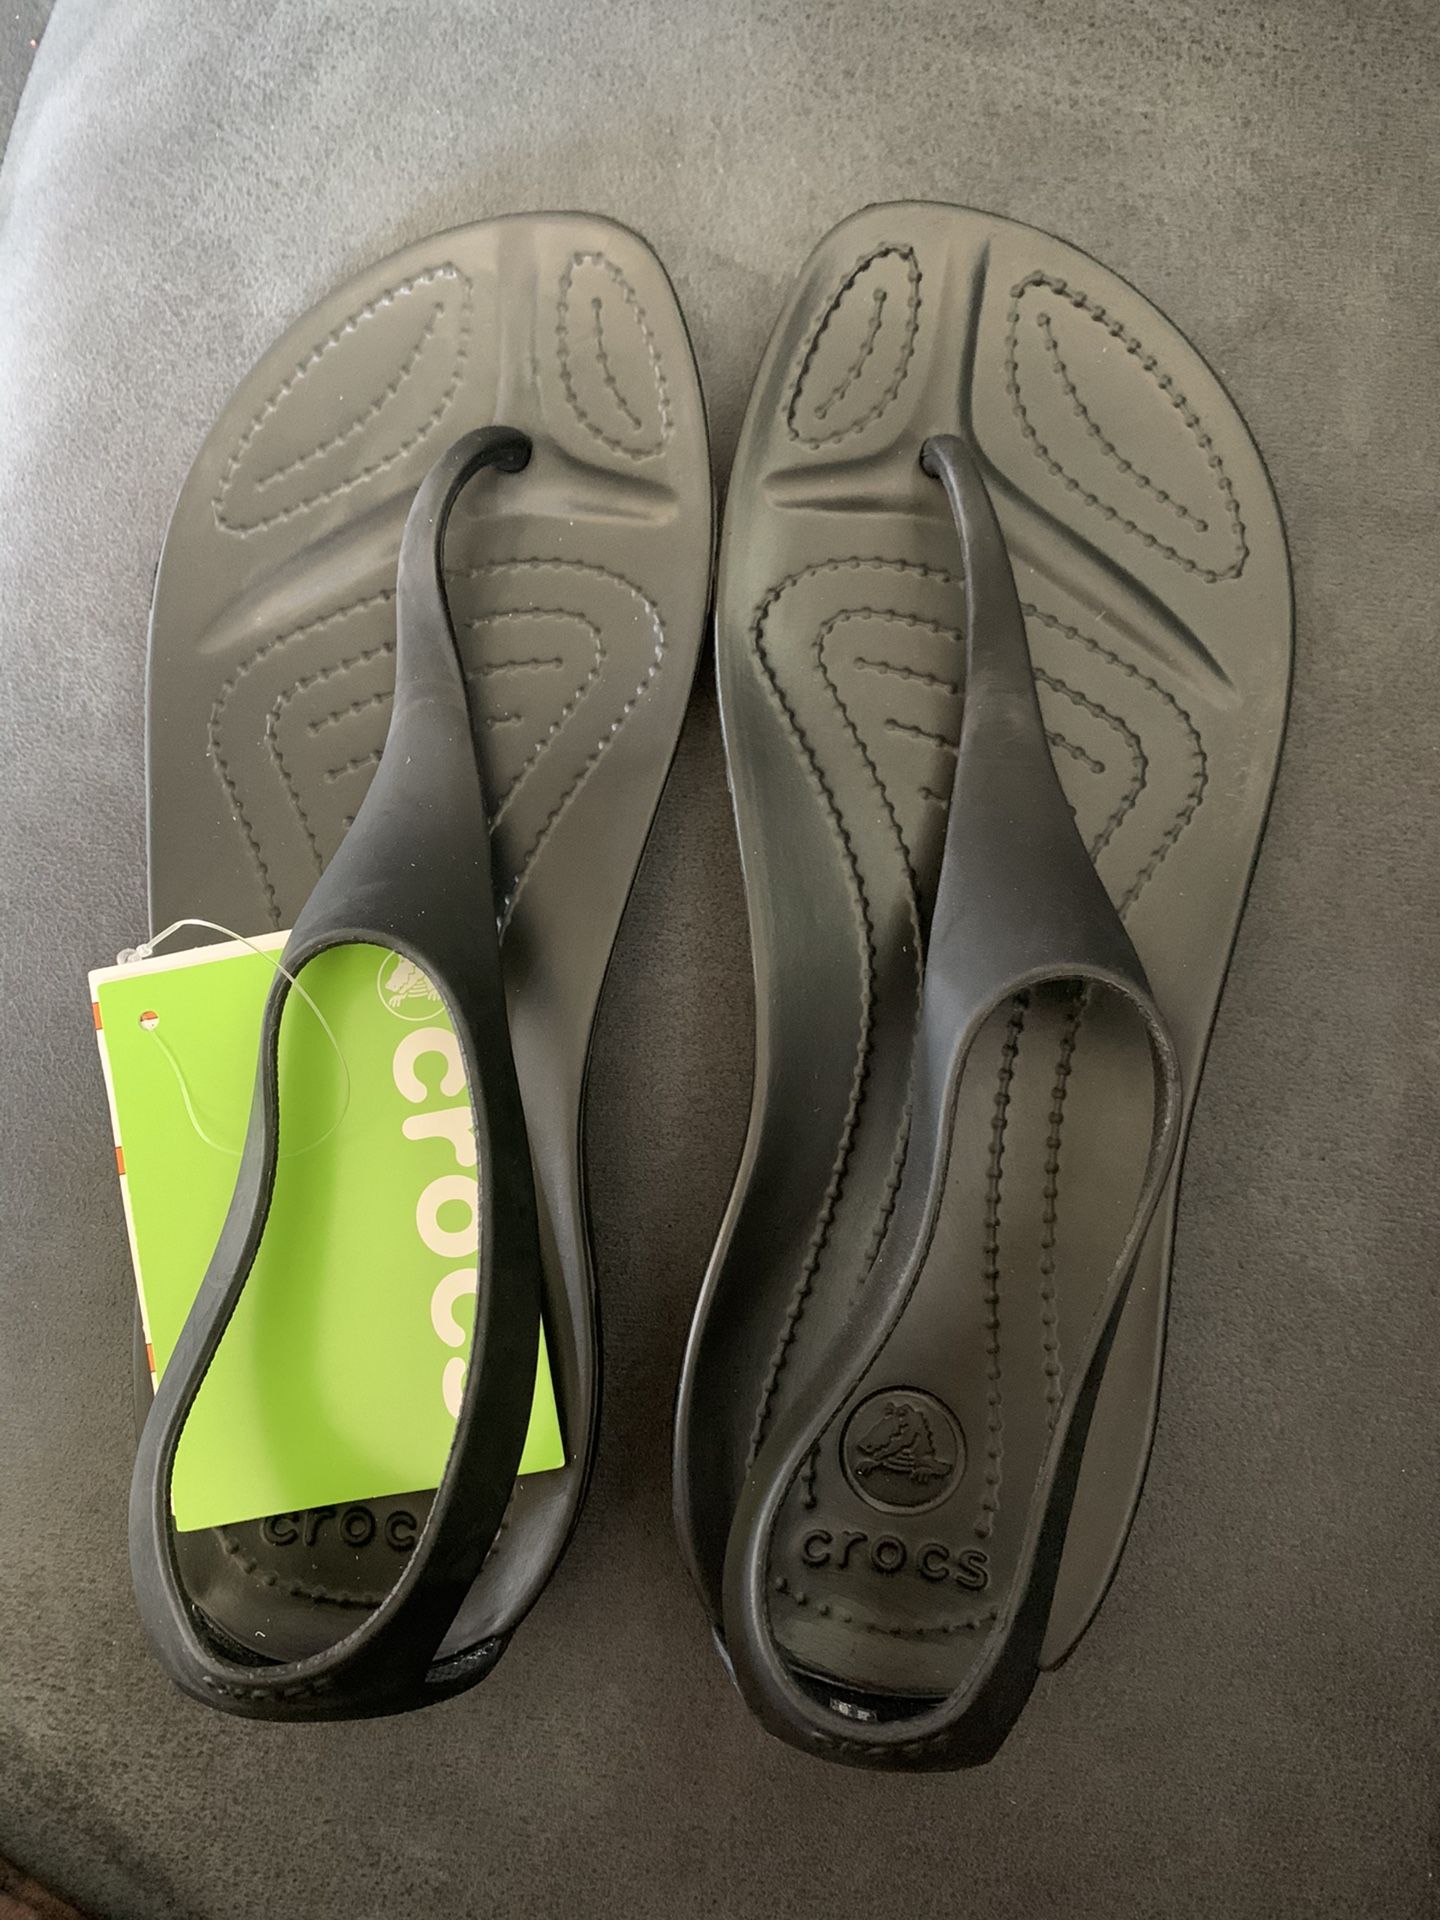 Crocs sandals